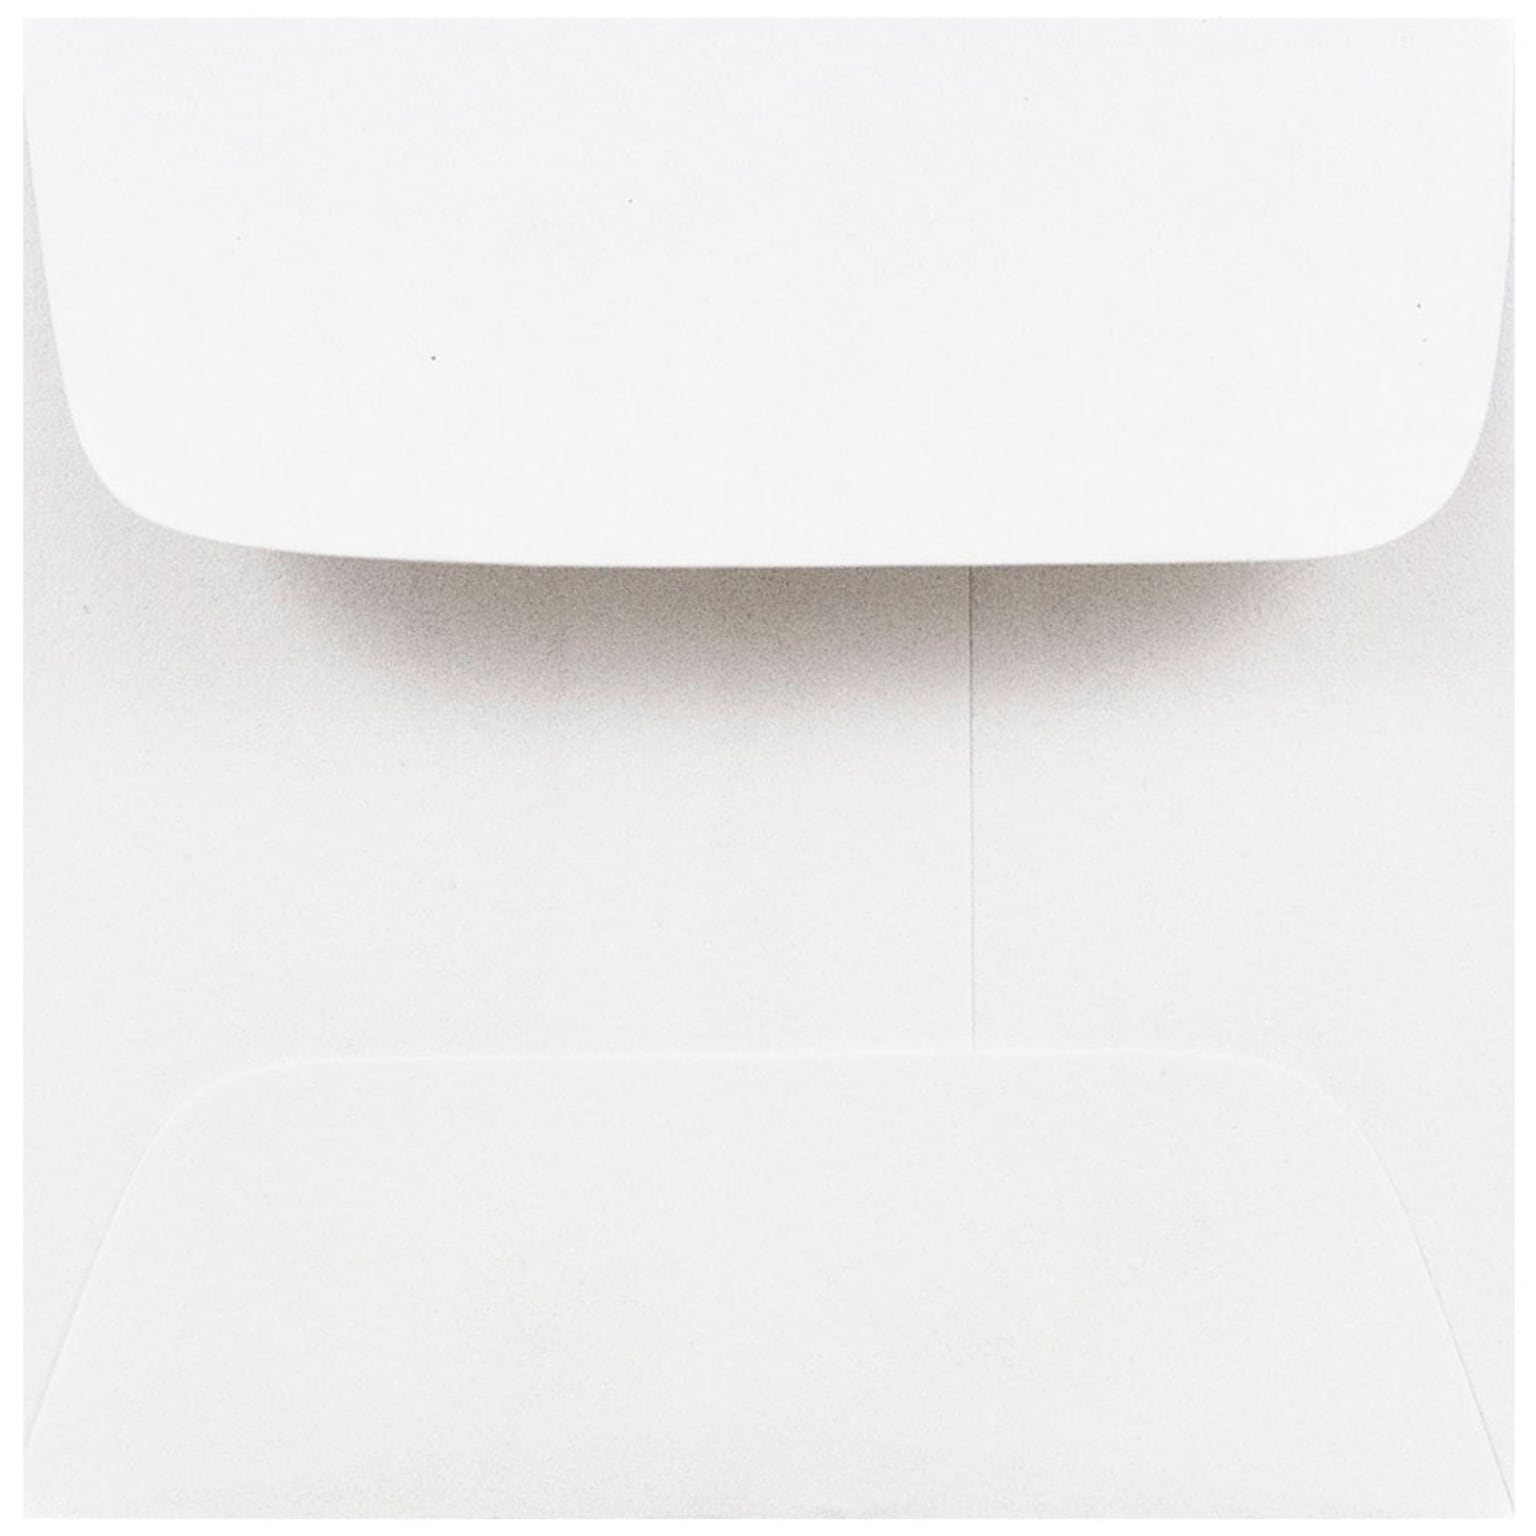 JAM Paper 2.375 x 2.375 Mini Square Envelopes, White, 25/Pack (203642)